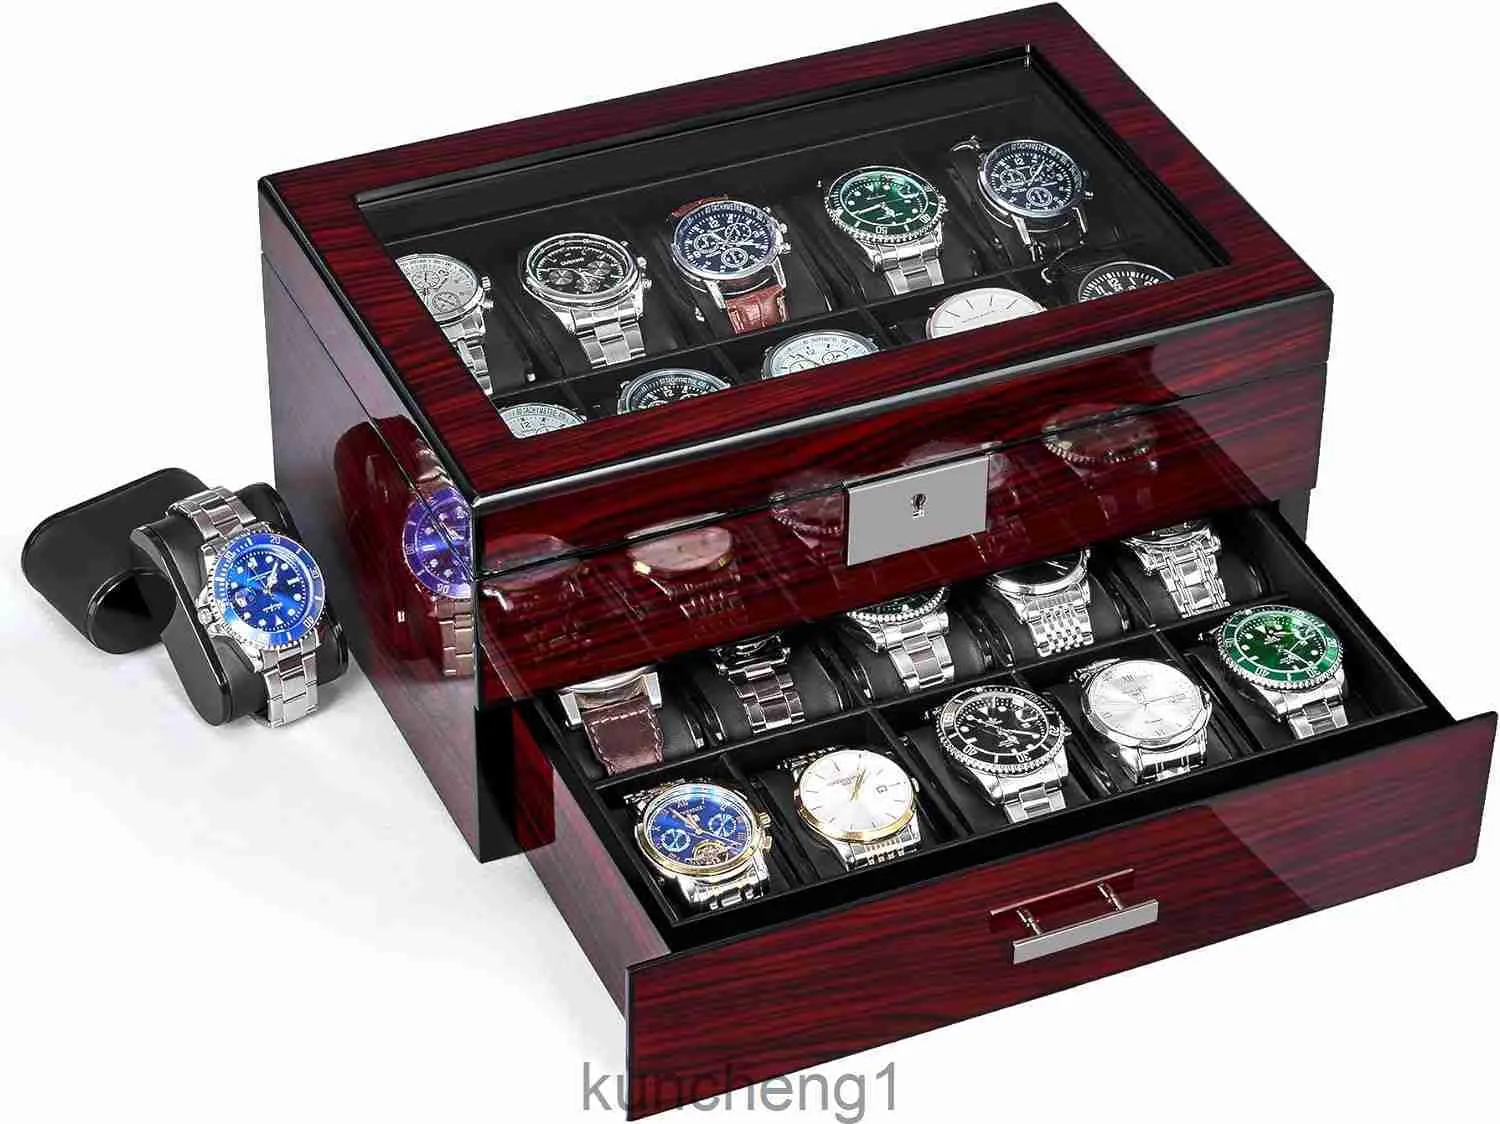 Anwbroad 20 slot horloge box Watch Case voor mannen met grote glazen deksel 2-laags horloge-display case sluitbare horloge-organisator Geschenkbare luxueuze horlogehouder ujwb002y